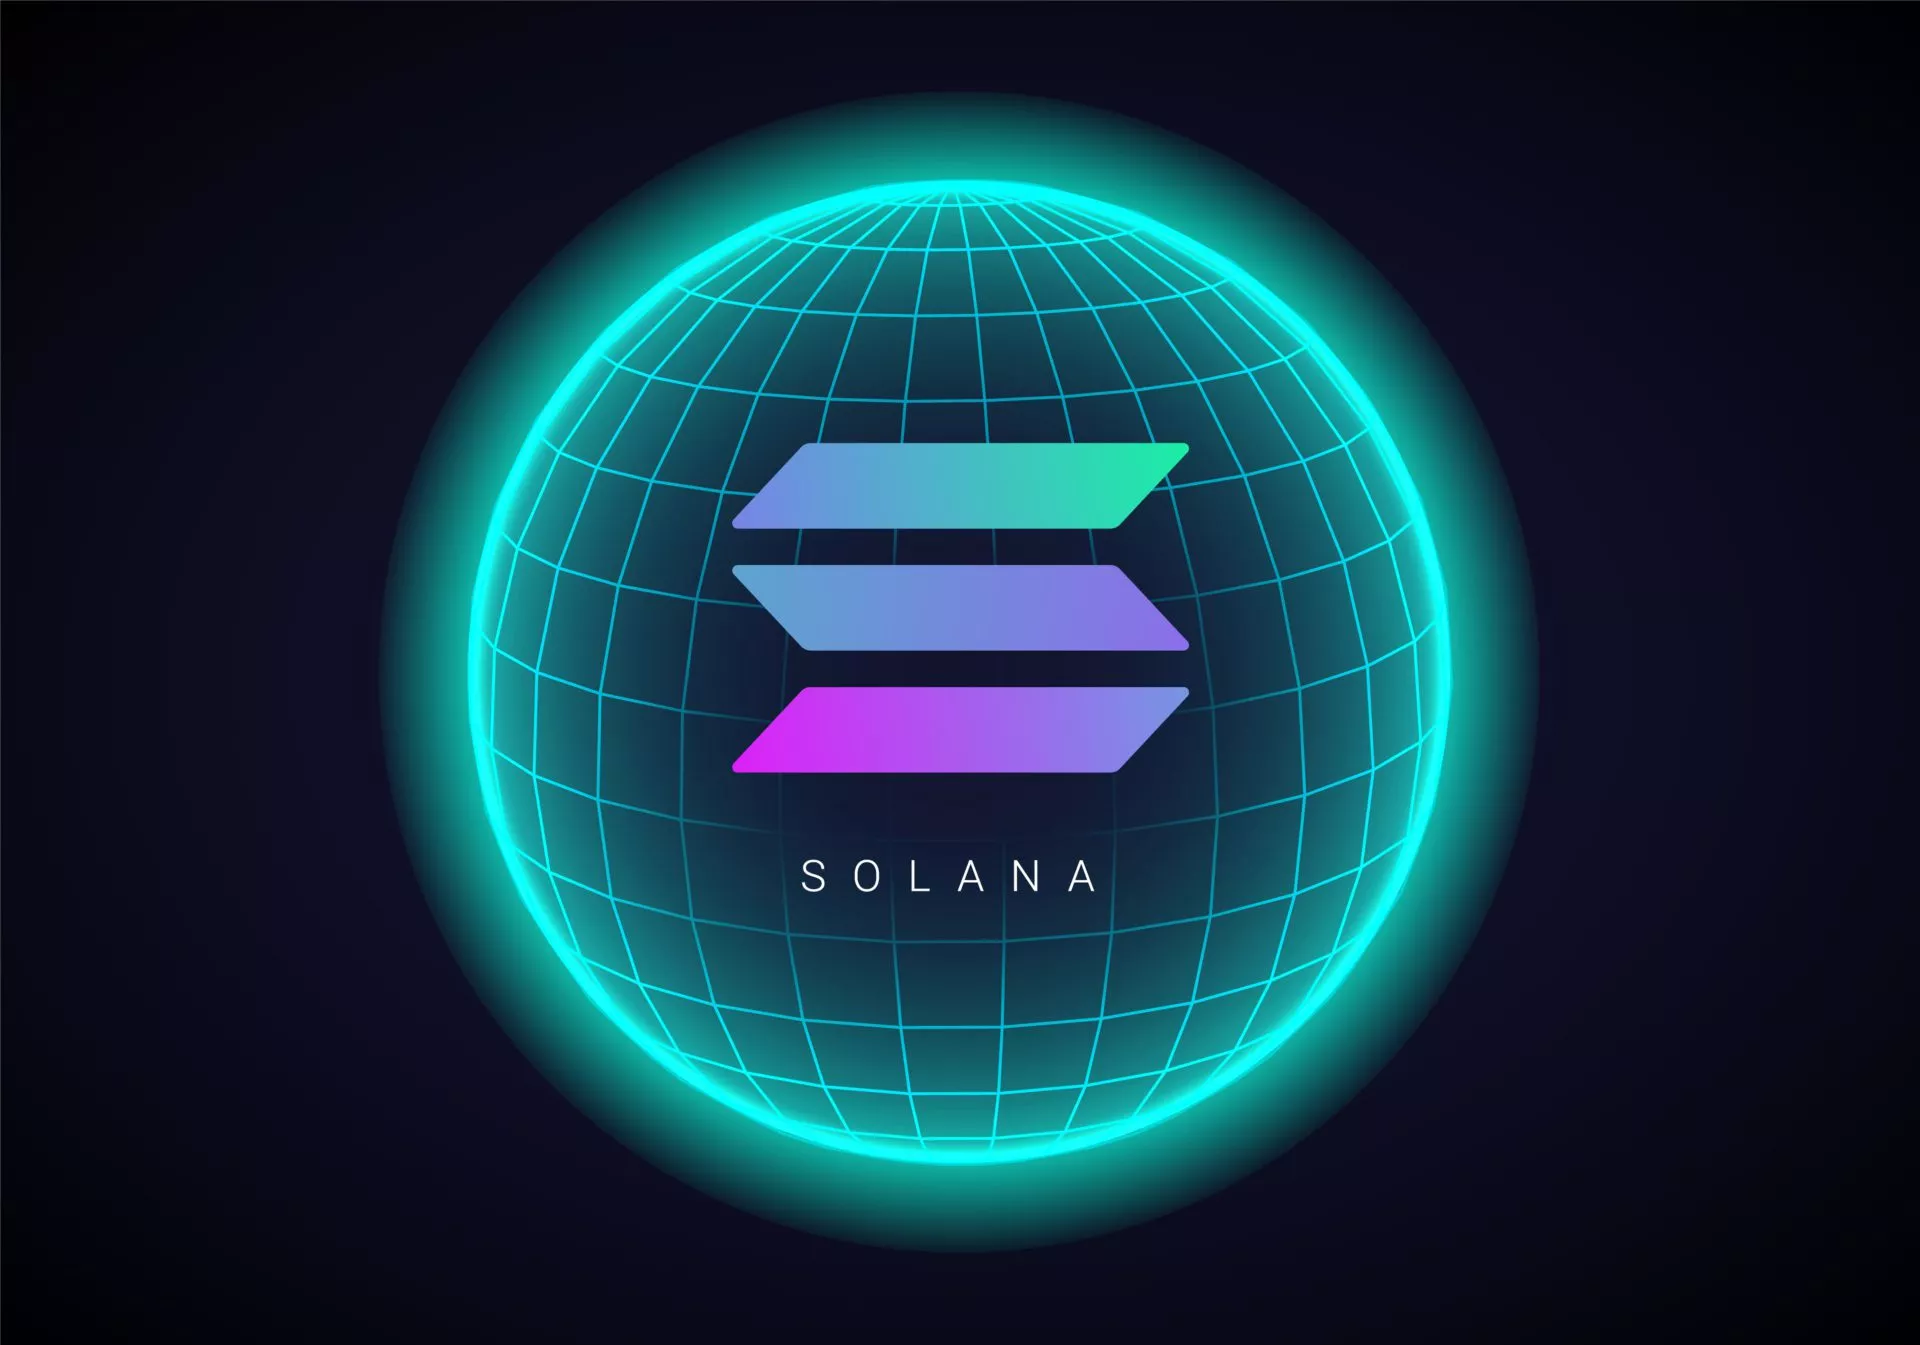 Verkoopsignaal gesignaleerd na enorme koersstijging van Solana